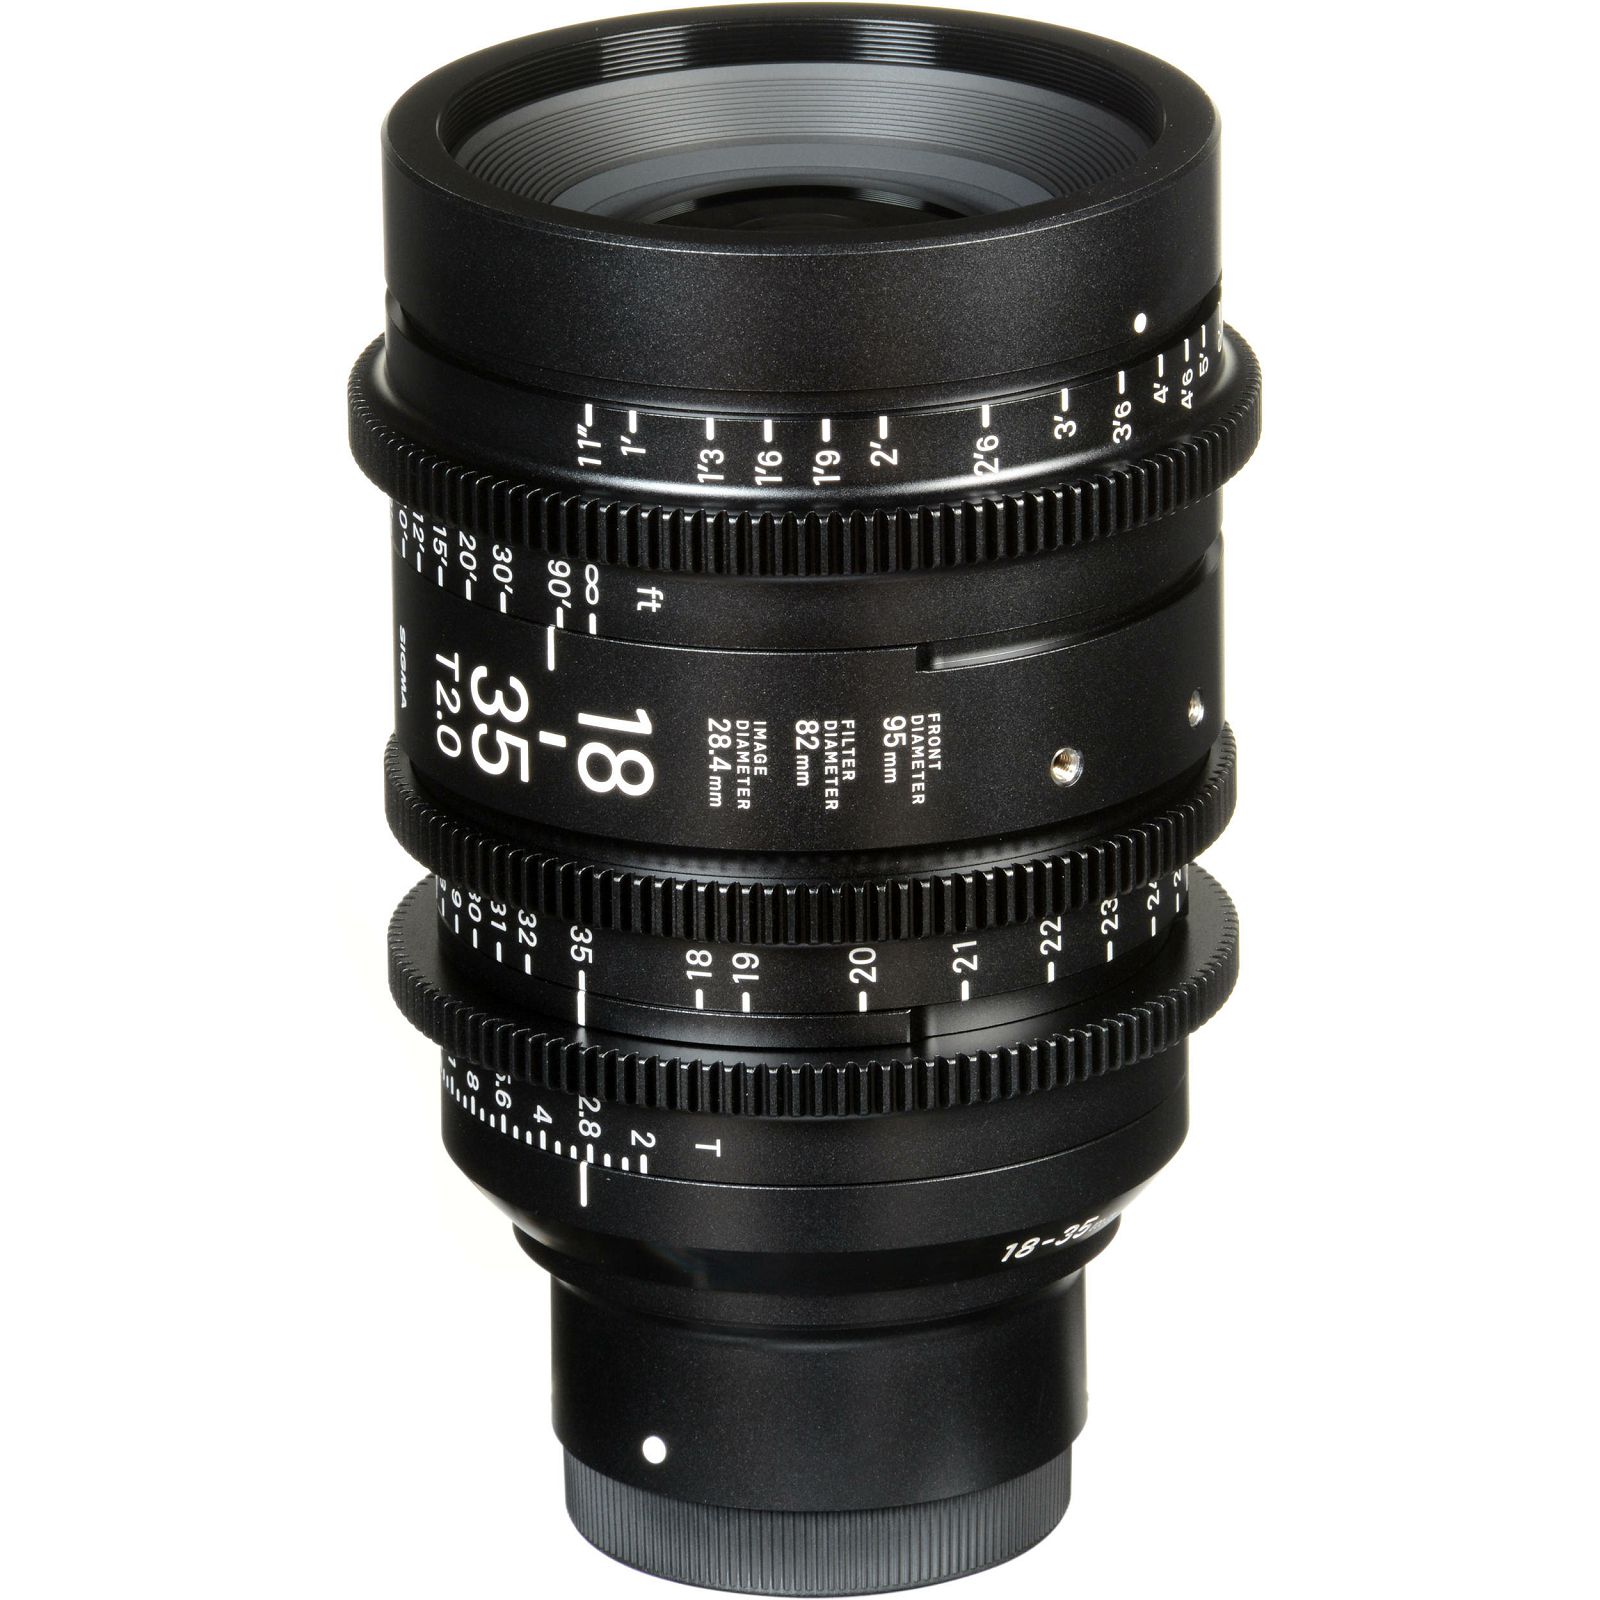 Sigma 18-35mm T2 CINE High speed zoom širokokutni objektiv za PL mount